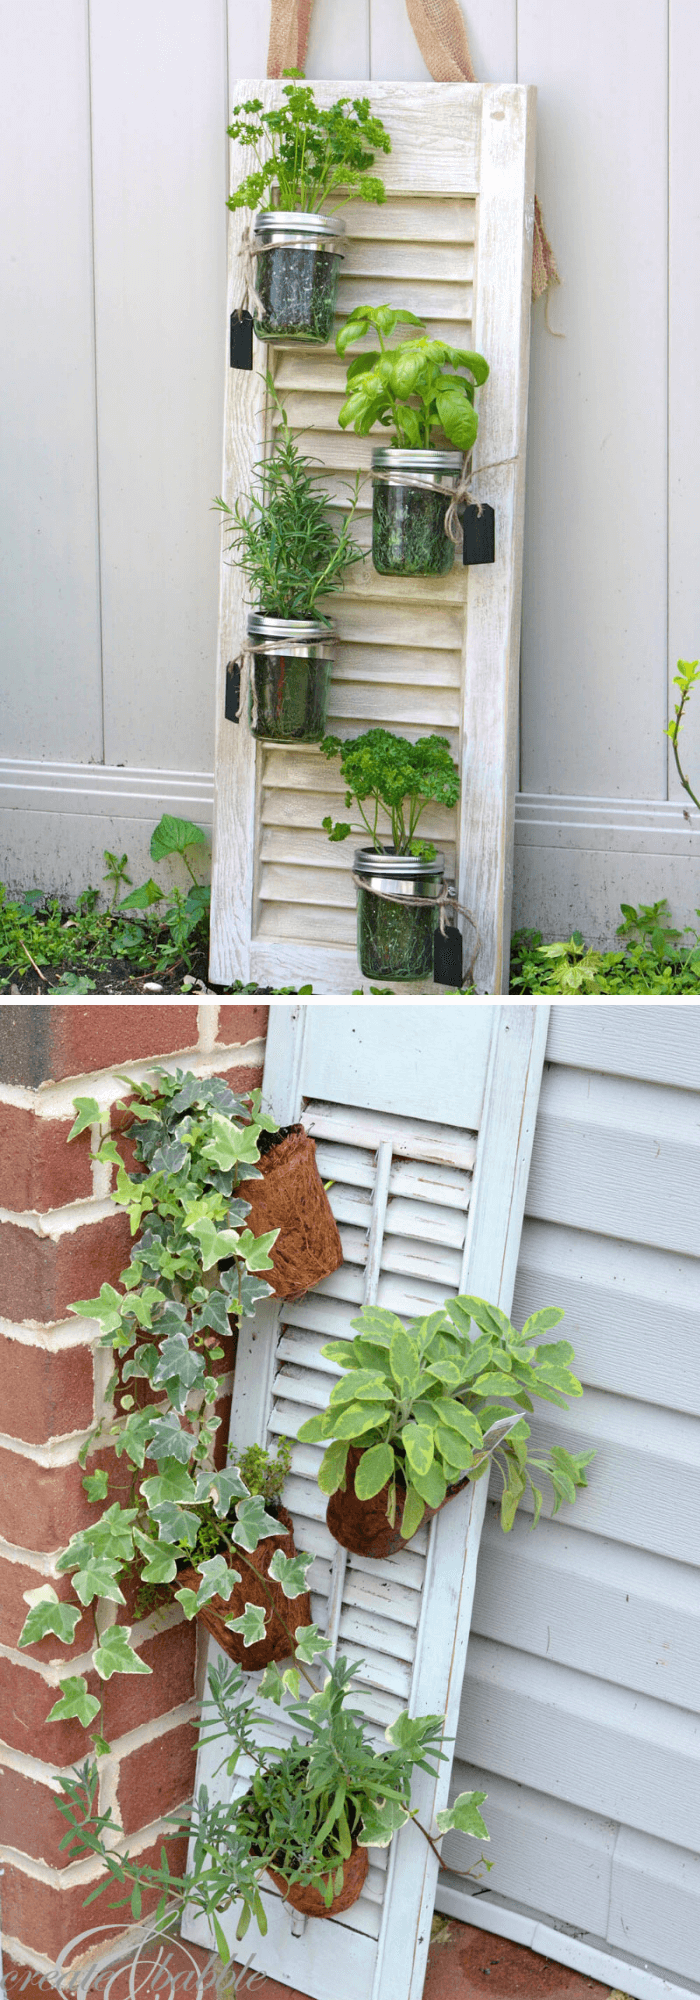 Old Shutter Outdoor Decor Ideas Shutter and Mason Jar Herb Garden